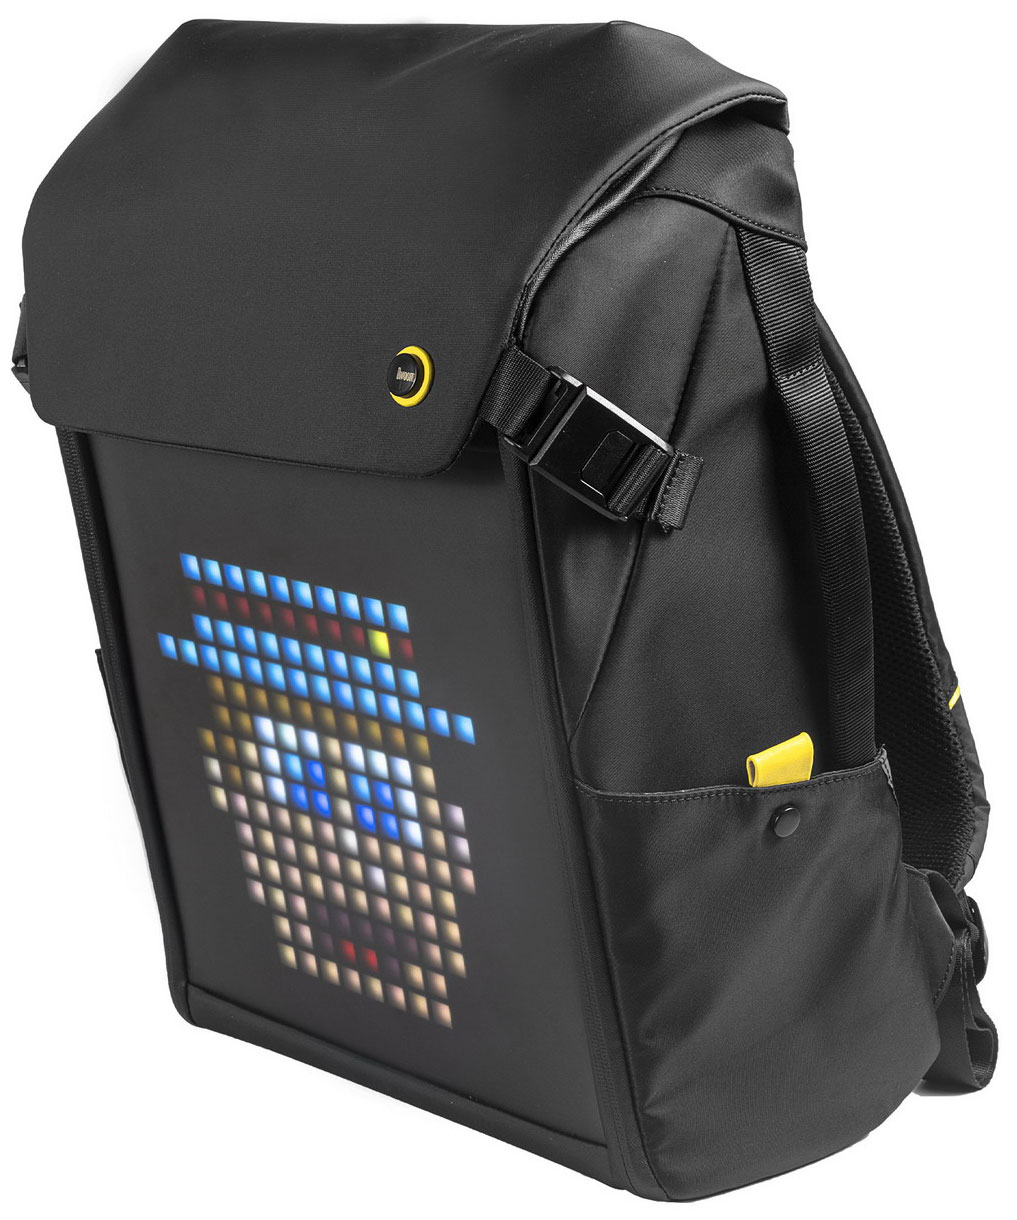 Рюкзак с пиксельным LED-экраном Divoom M рюкзак с пиксельным led экраном divoom s